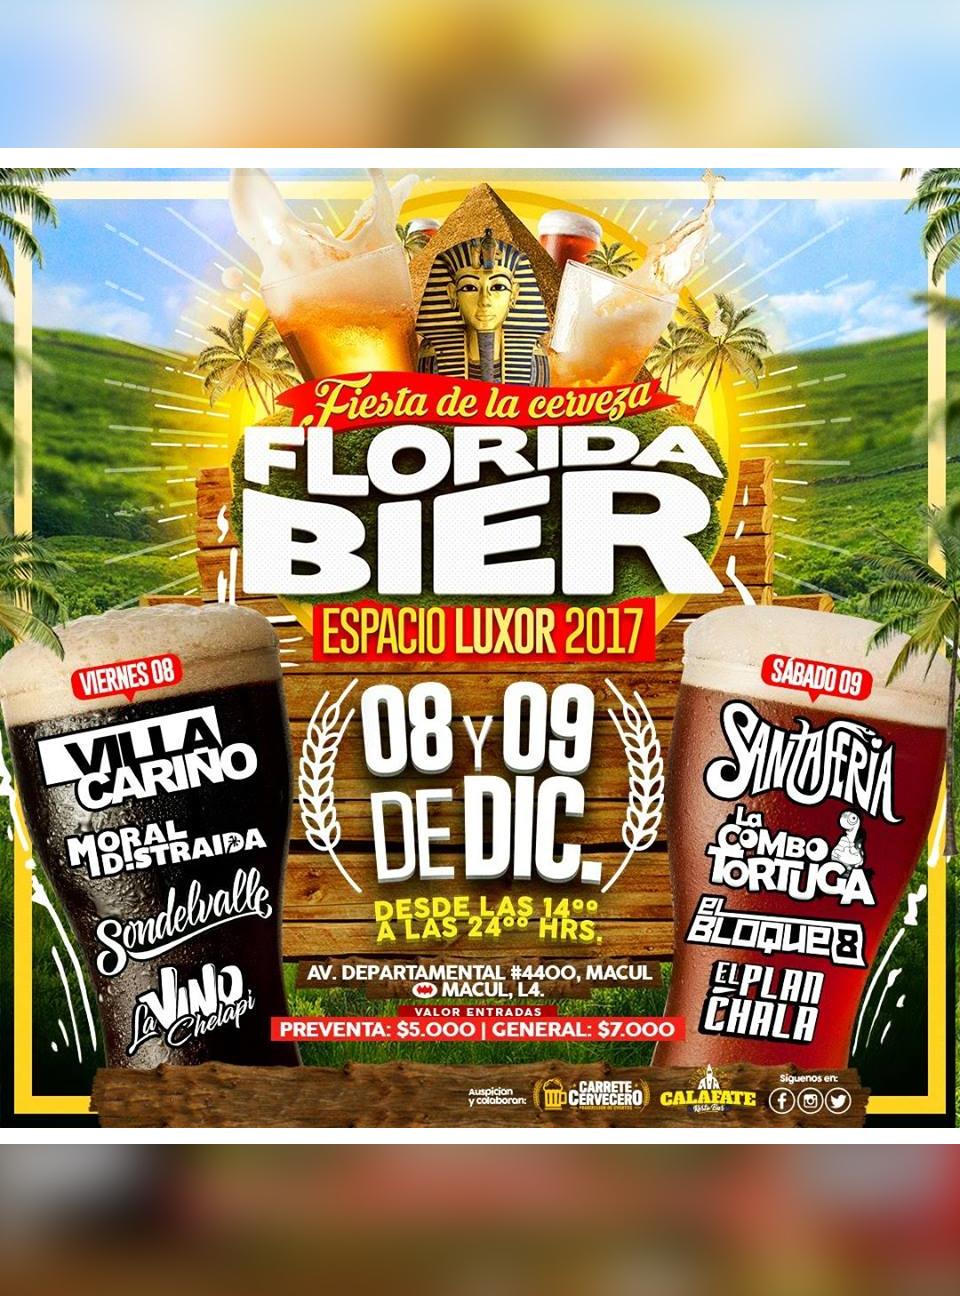 Floridabier 2017 - Santaferia, El Bloque 8, La Combo Tortuga y más